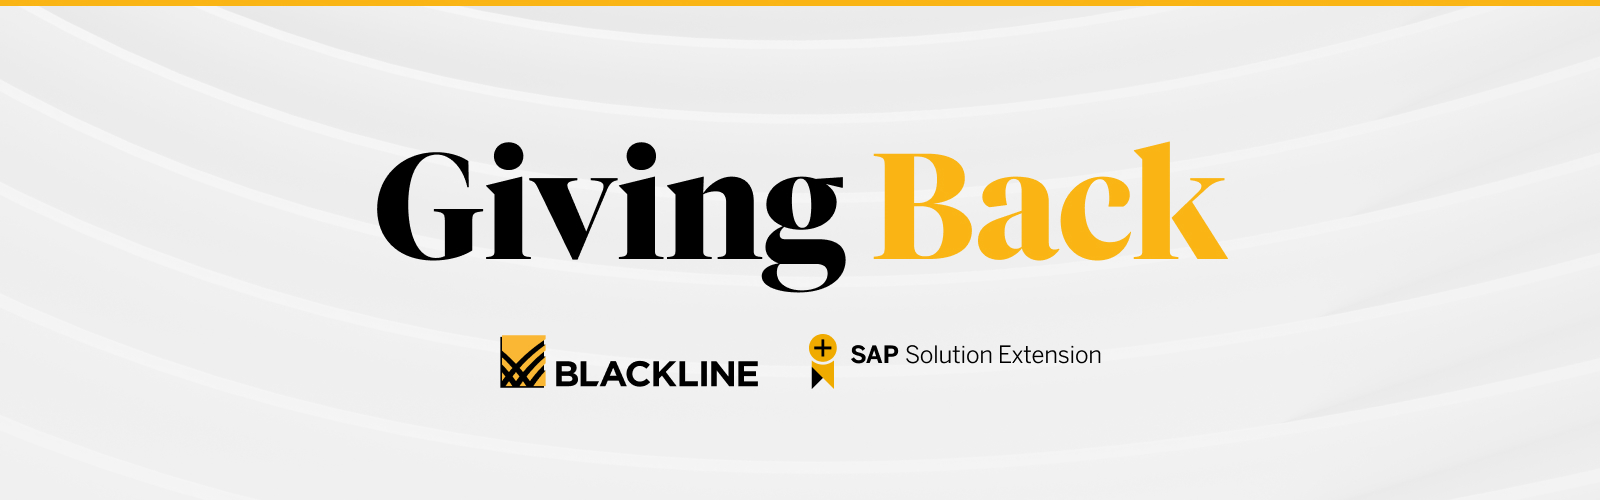 Giving Back | BlackLine + SAP Solution Extension